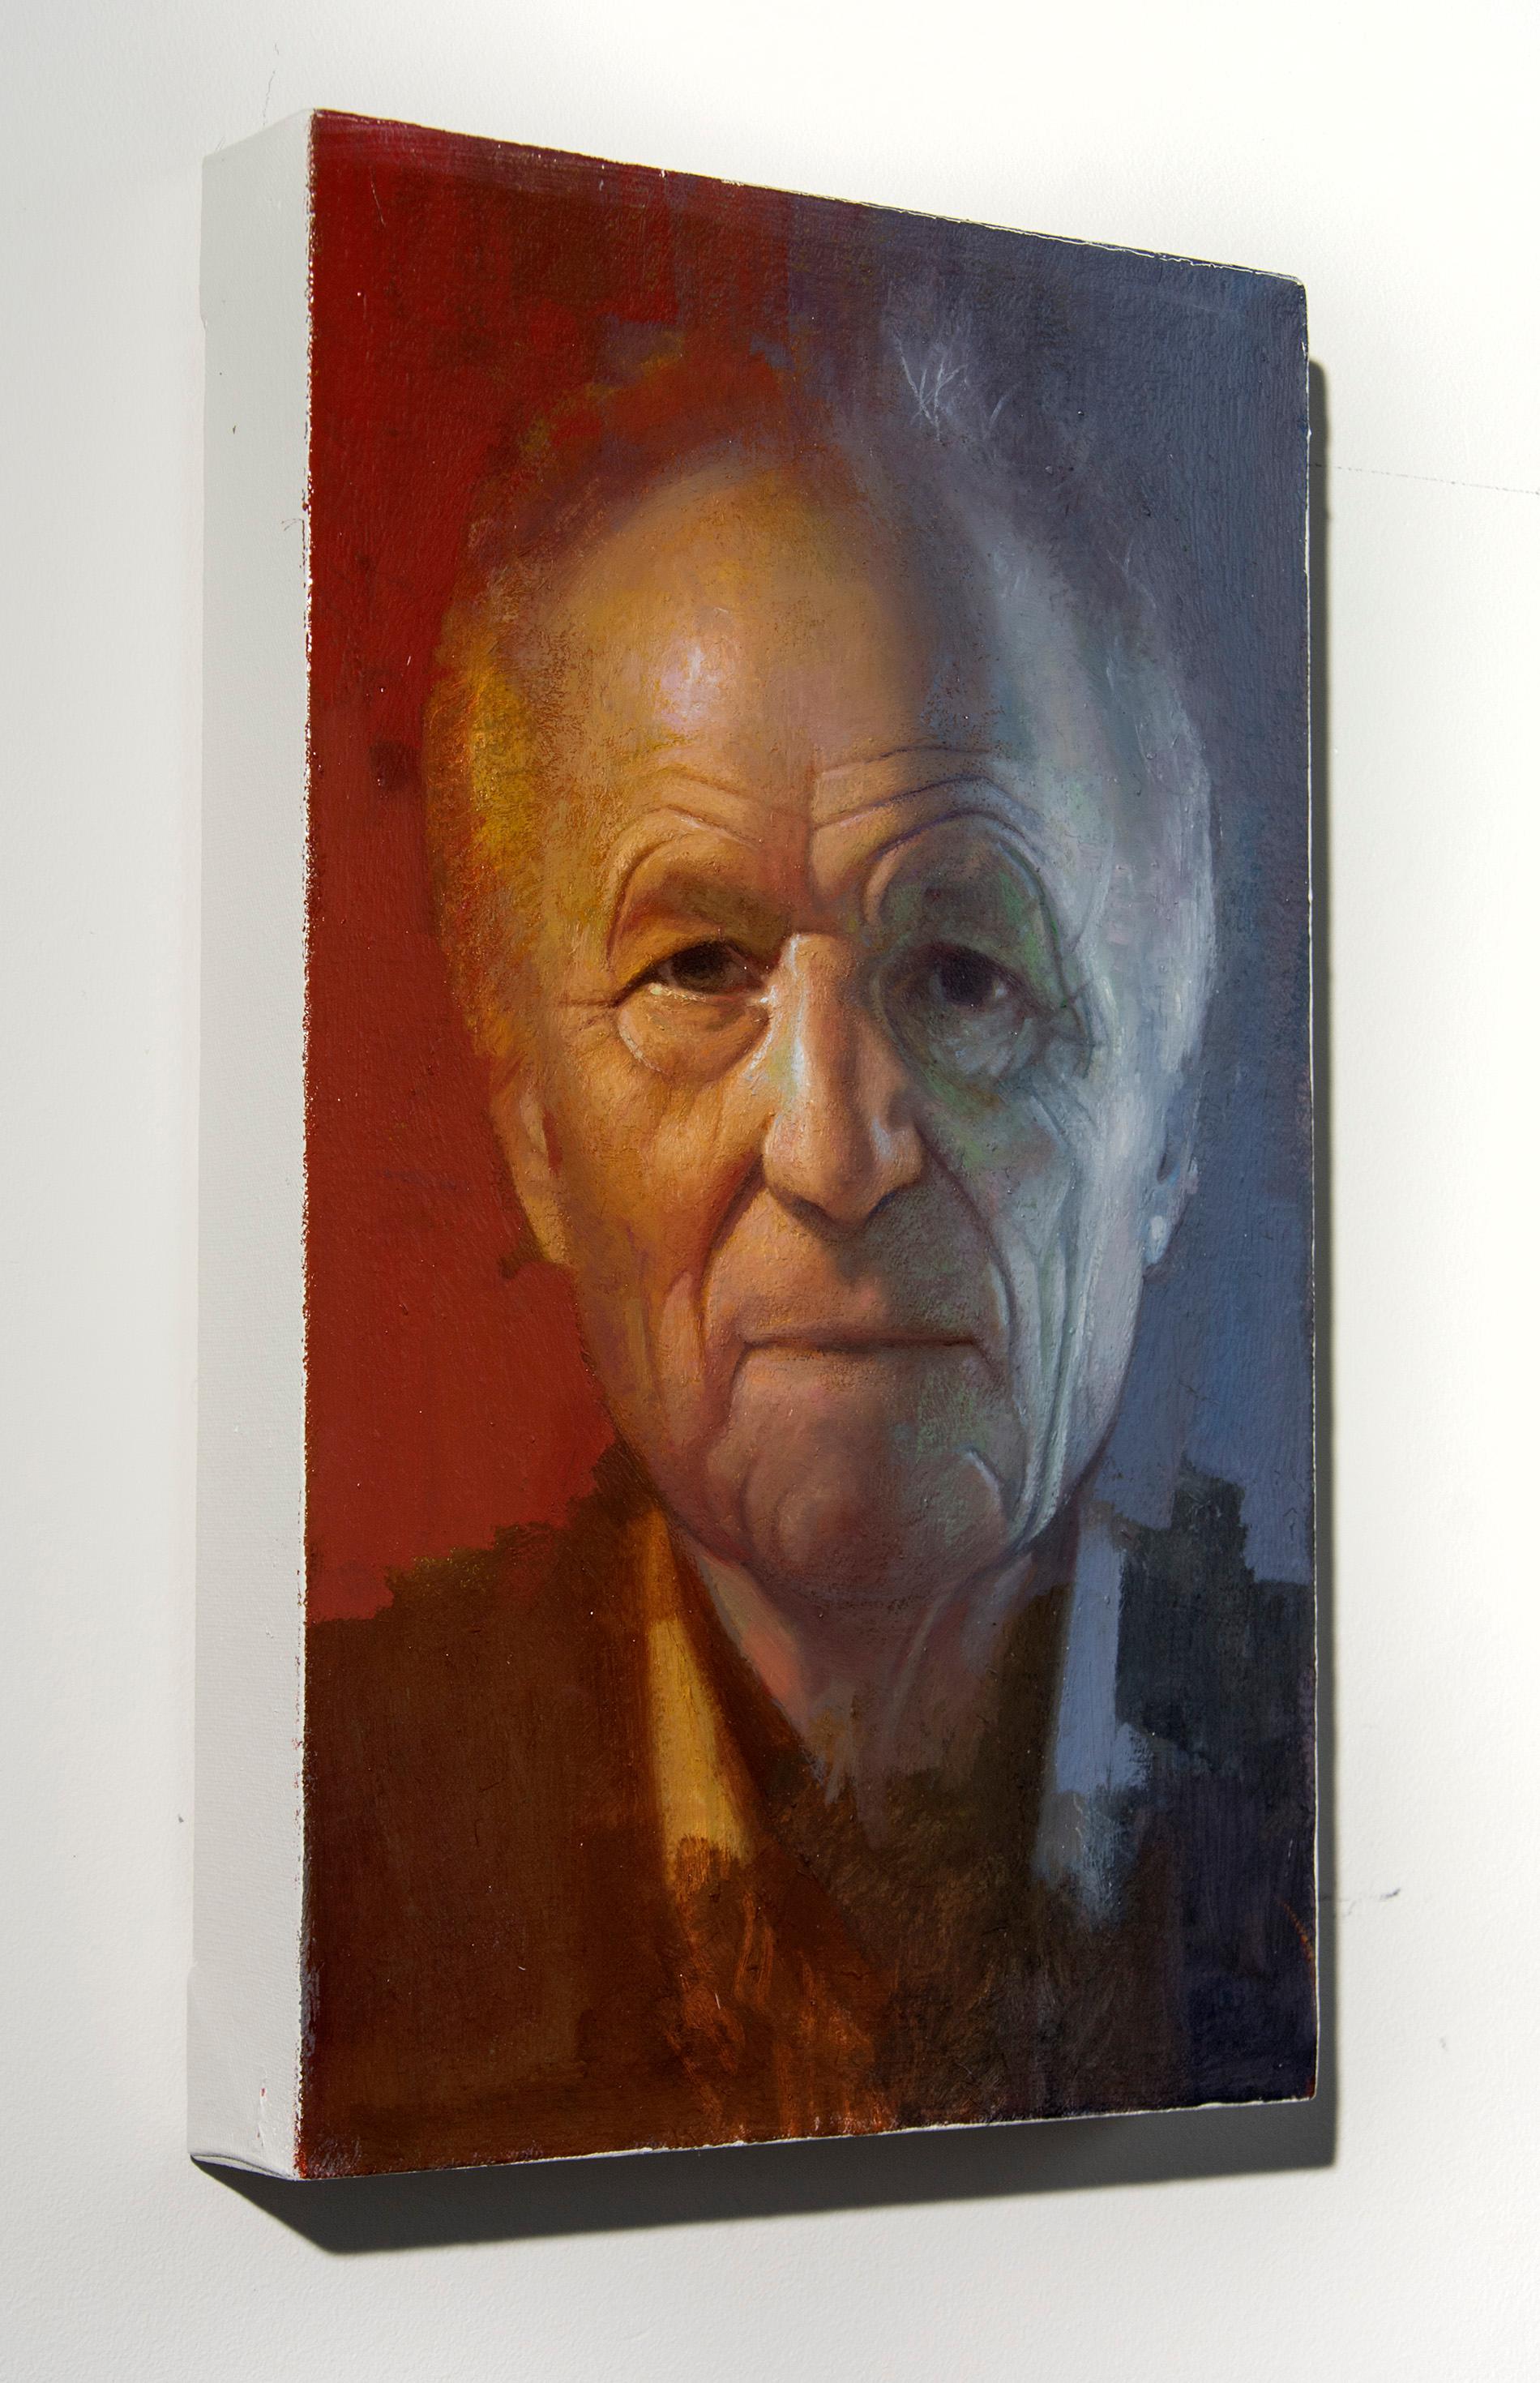 Antonio Lopez Garcia – rot, blau, männlich, figurativ, Porträt, Öl auf Leinwand – Painting von Daniel Hughes